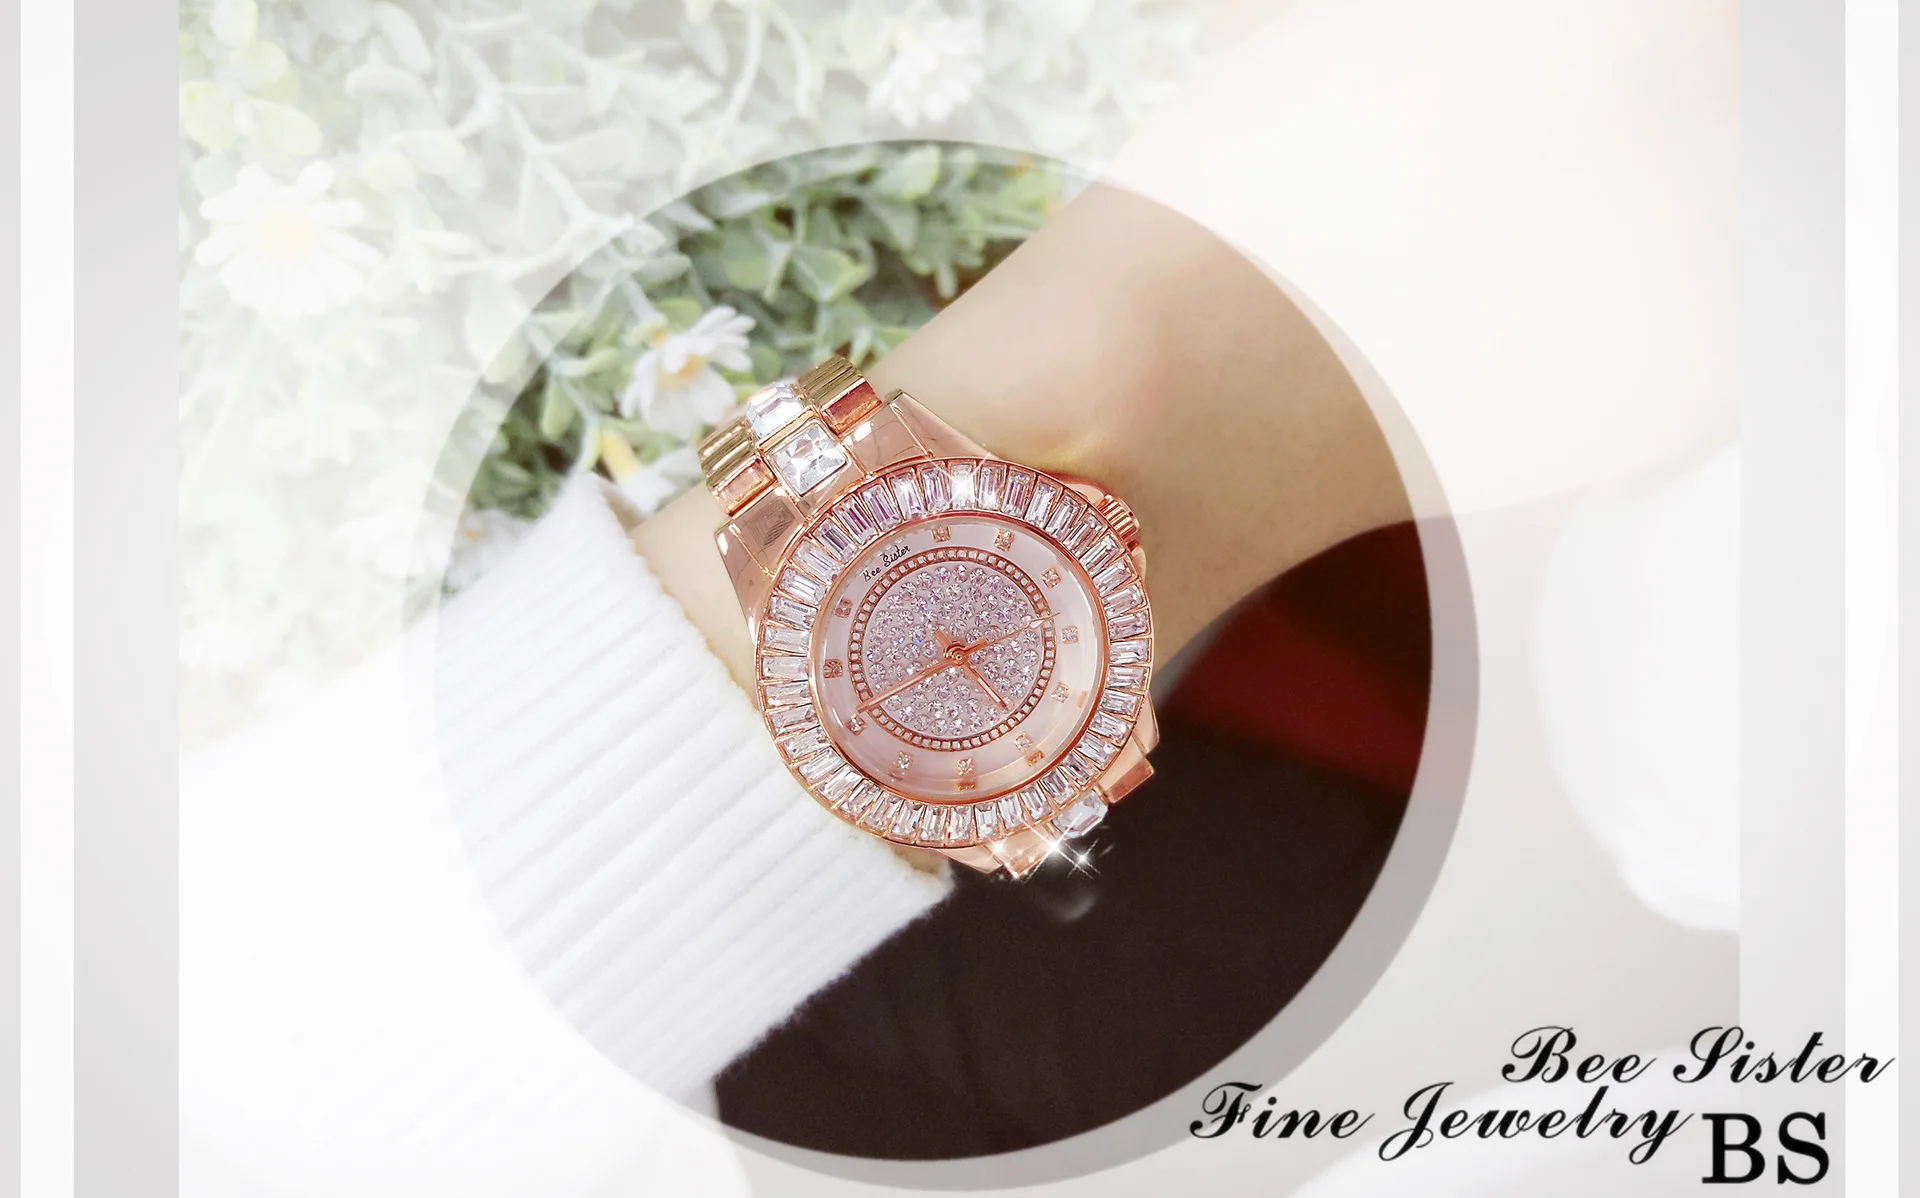 Женские часы Роскошные бриллиантовые Montre известные элегантные часы с наручным браслетом женские наручные часы Relogios Femininos saat Silver Wach